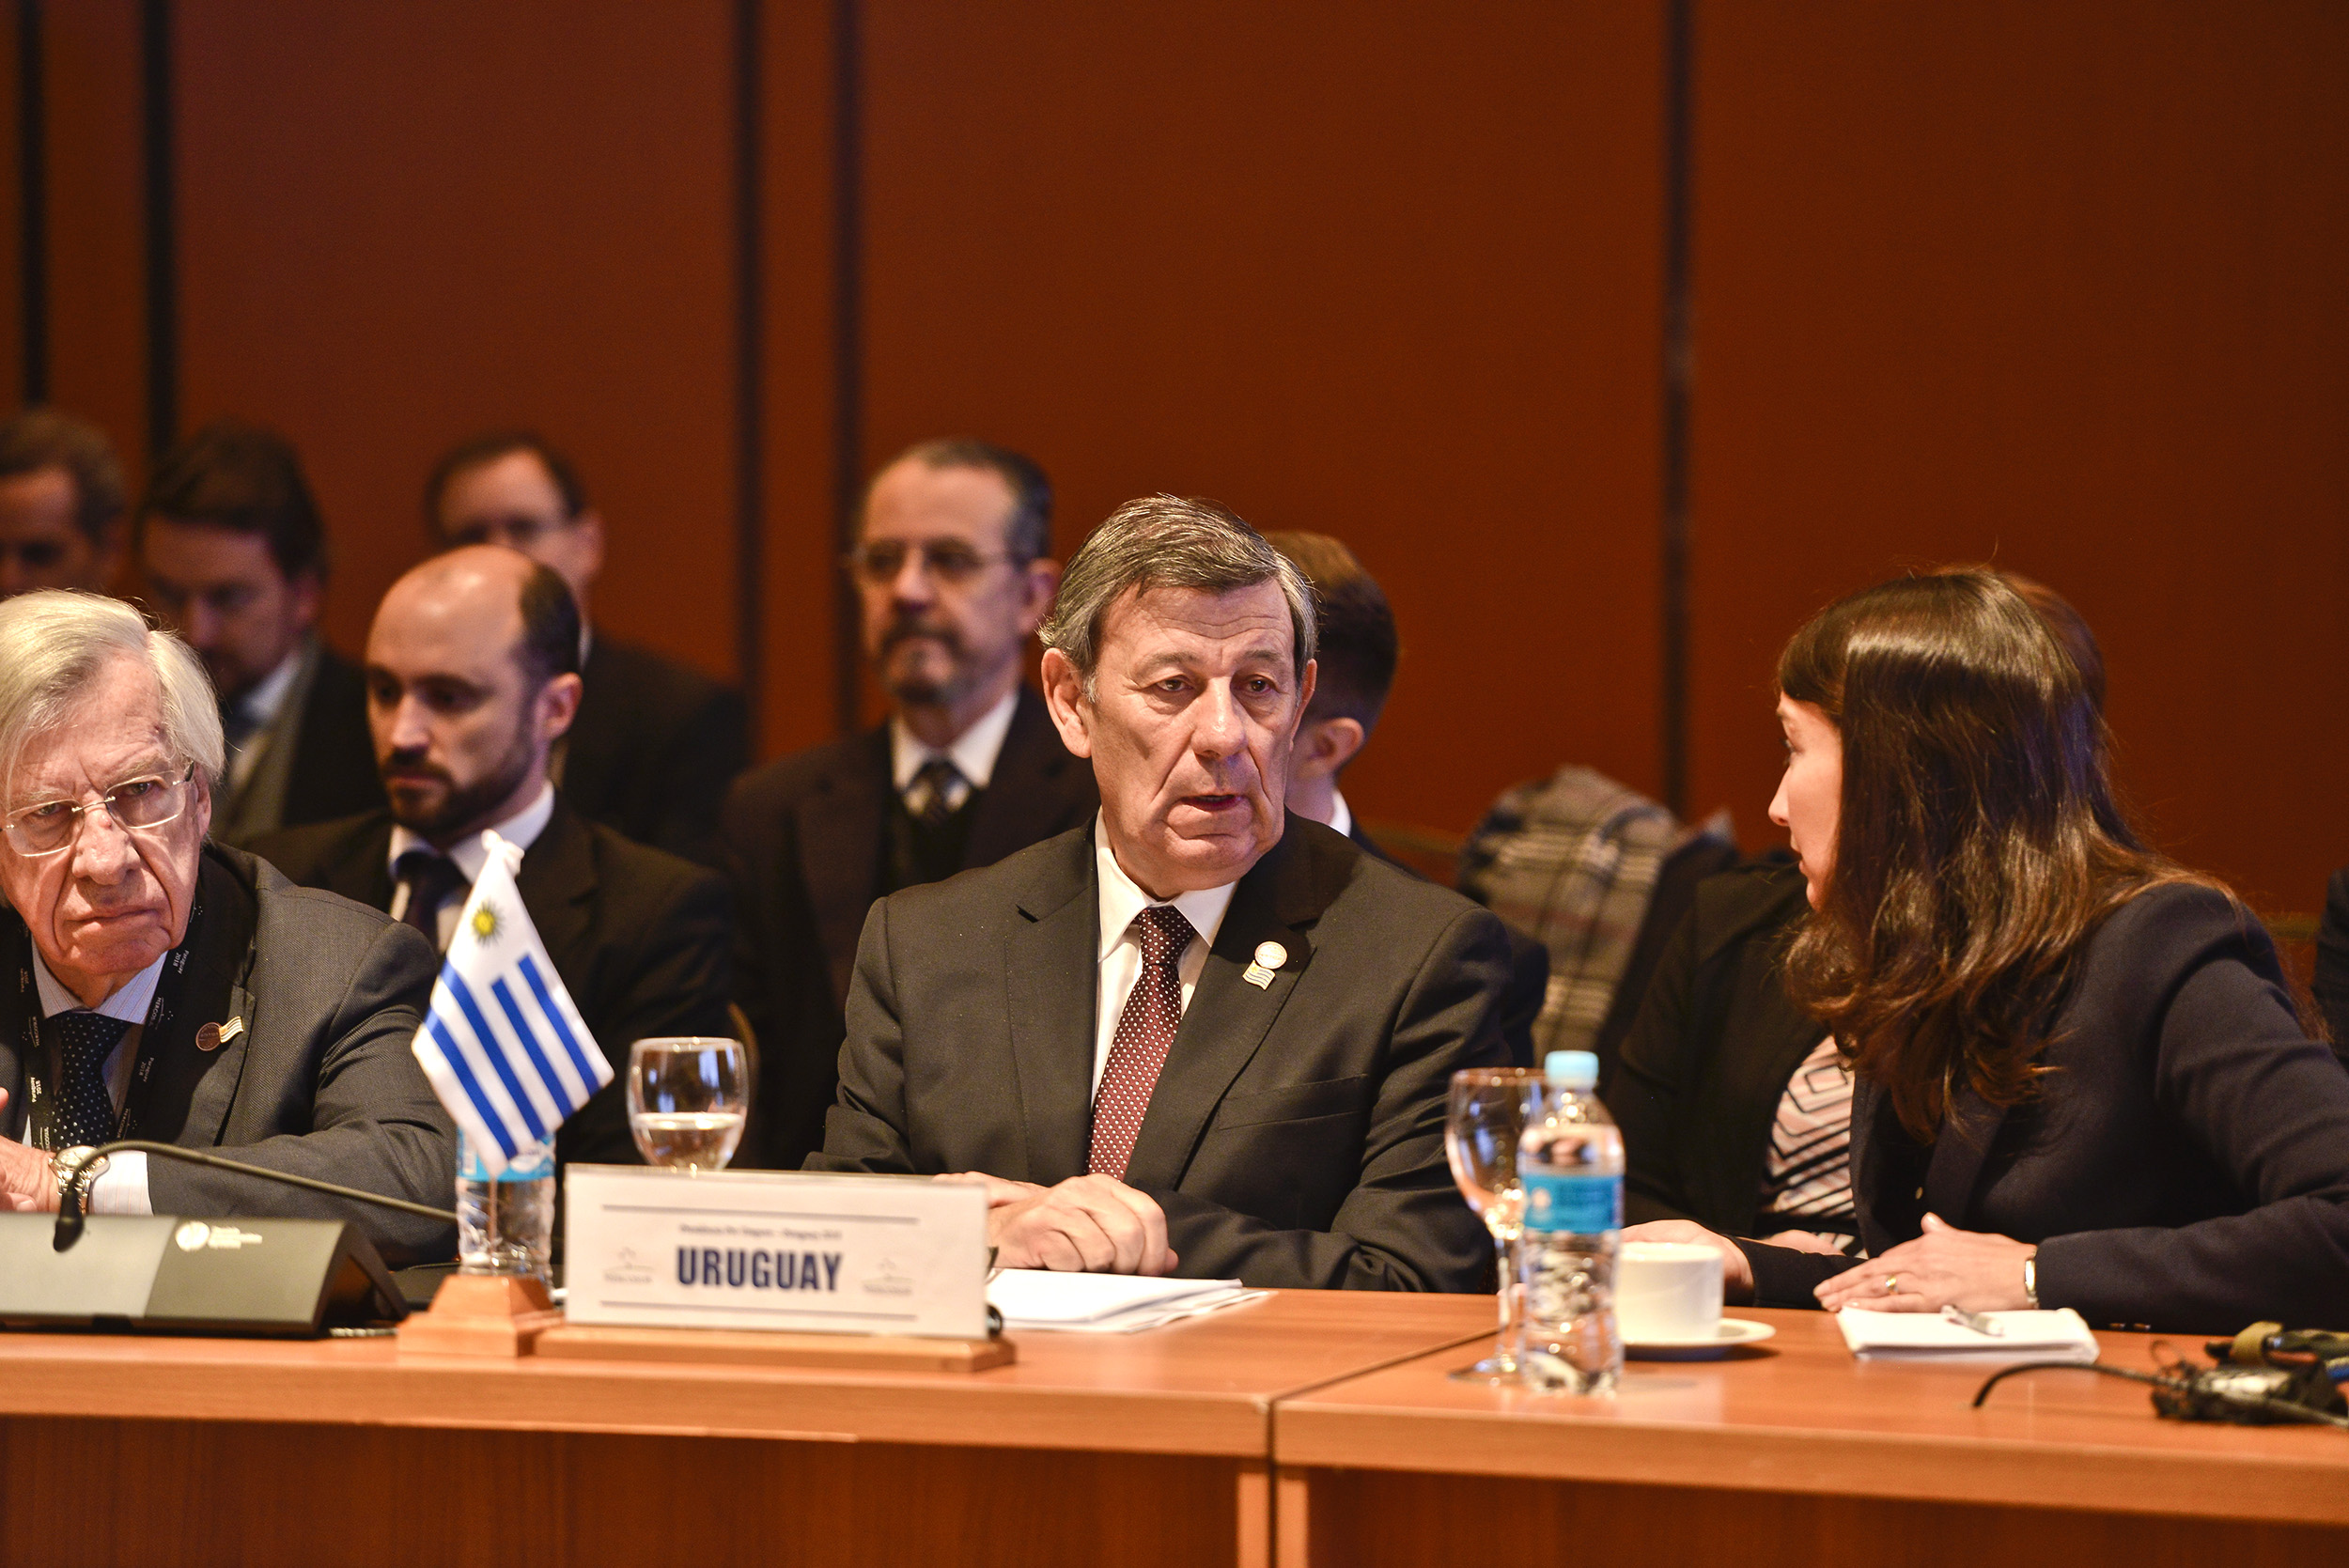 Cancilleres del MERCOSUR destacaron labor de la PPT del Paraguay en la consolidación del proceso de integración del Mercosur